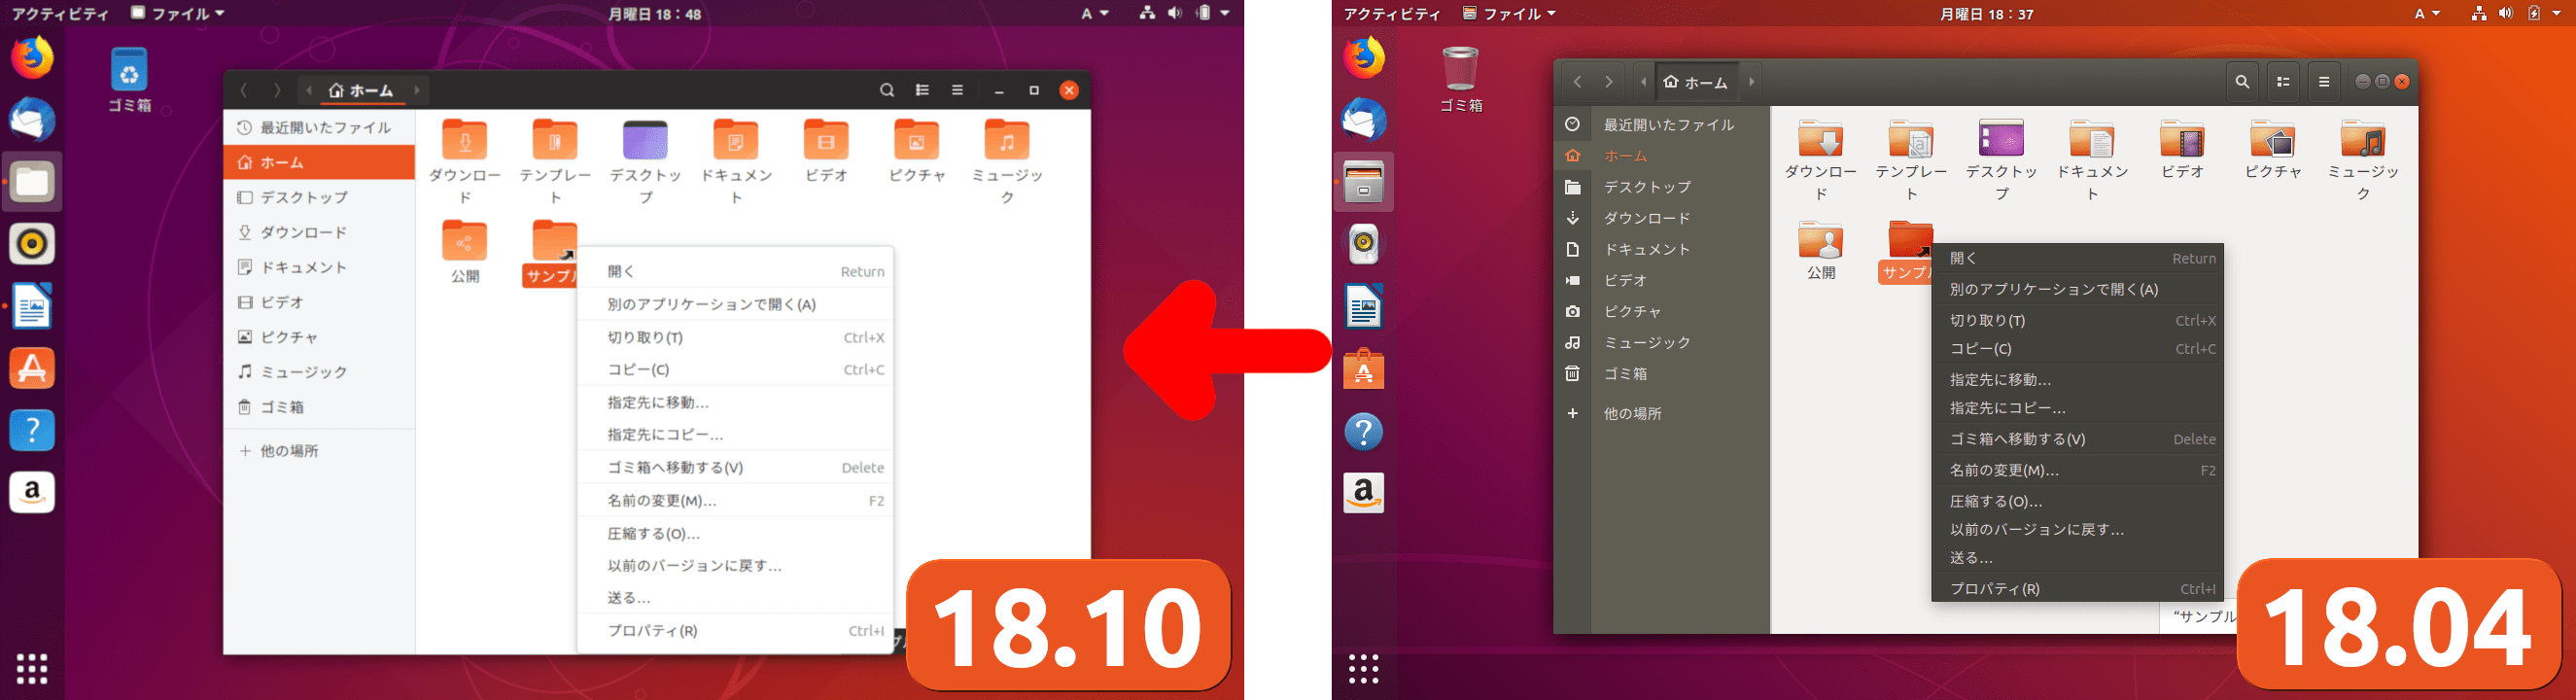 Ubuntu 18 10でデスクトップはどう変わった 18 04との比較 新機能 変更点まとめ 比較画像つき Lfi